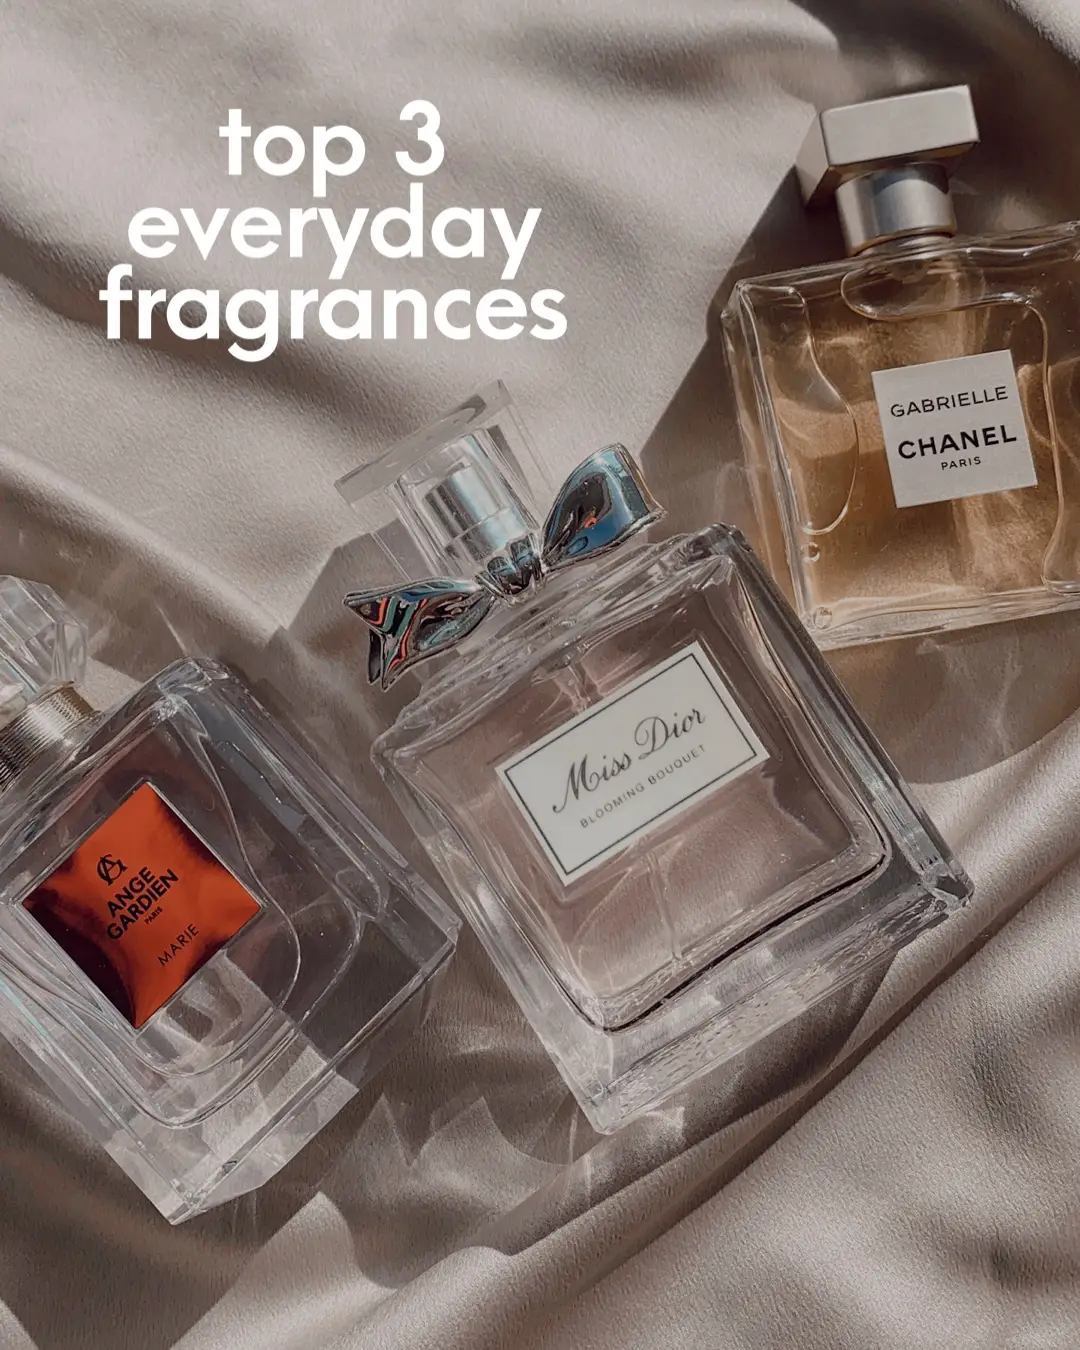 Jasmin des Anges Fragrance: floral-fruity fragrance drenched in